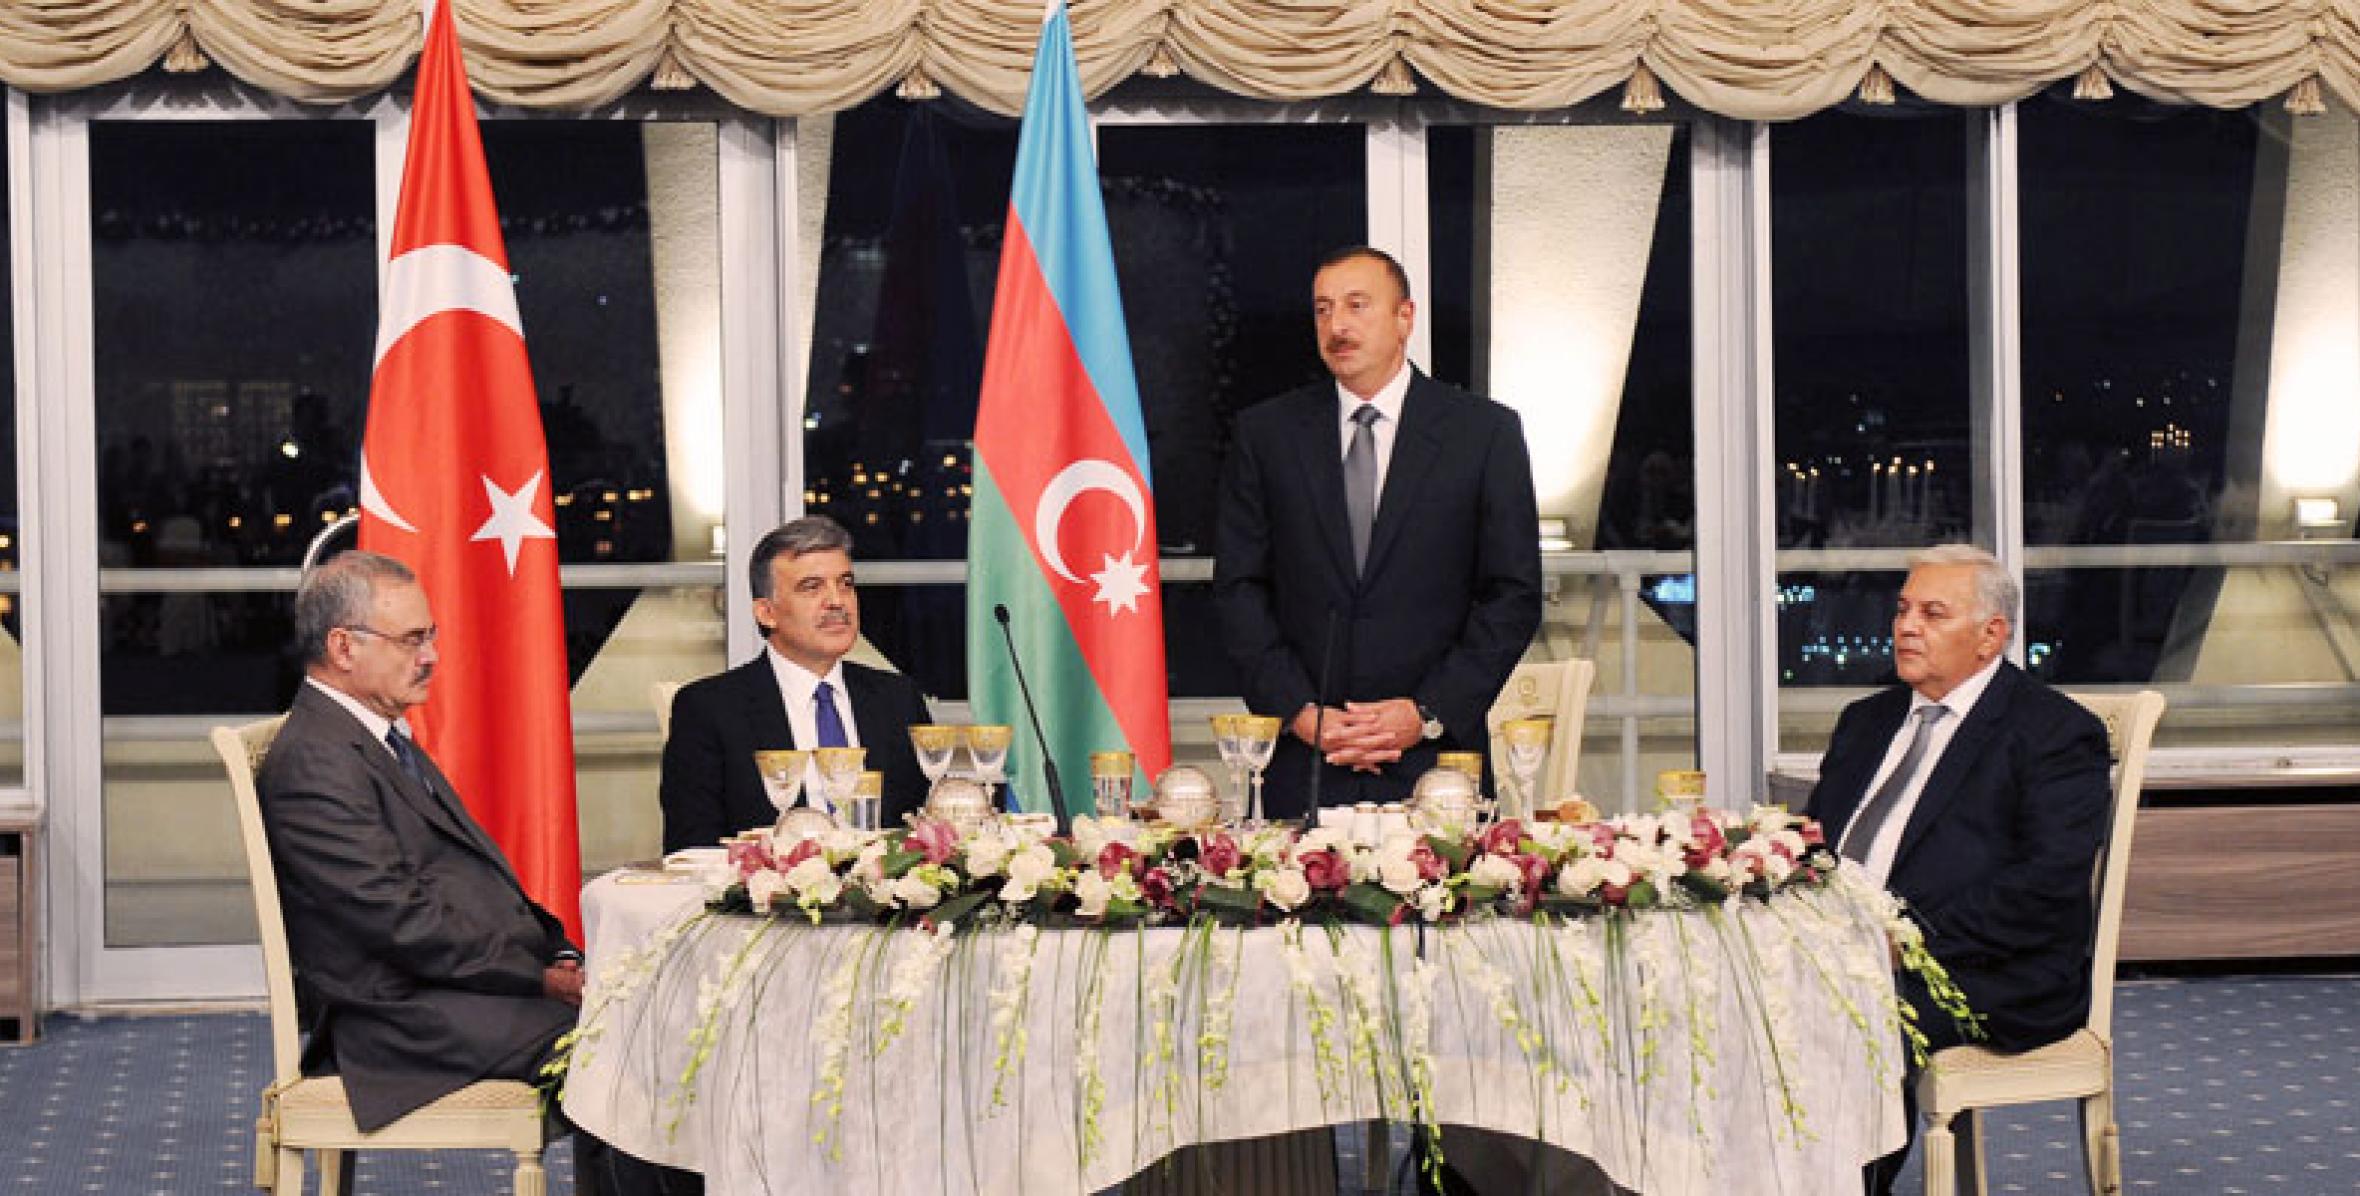 От имени Ильхама Алиева был устроен официальный прием в честь Президента Турецкой Республики Абдуллаха Гюля